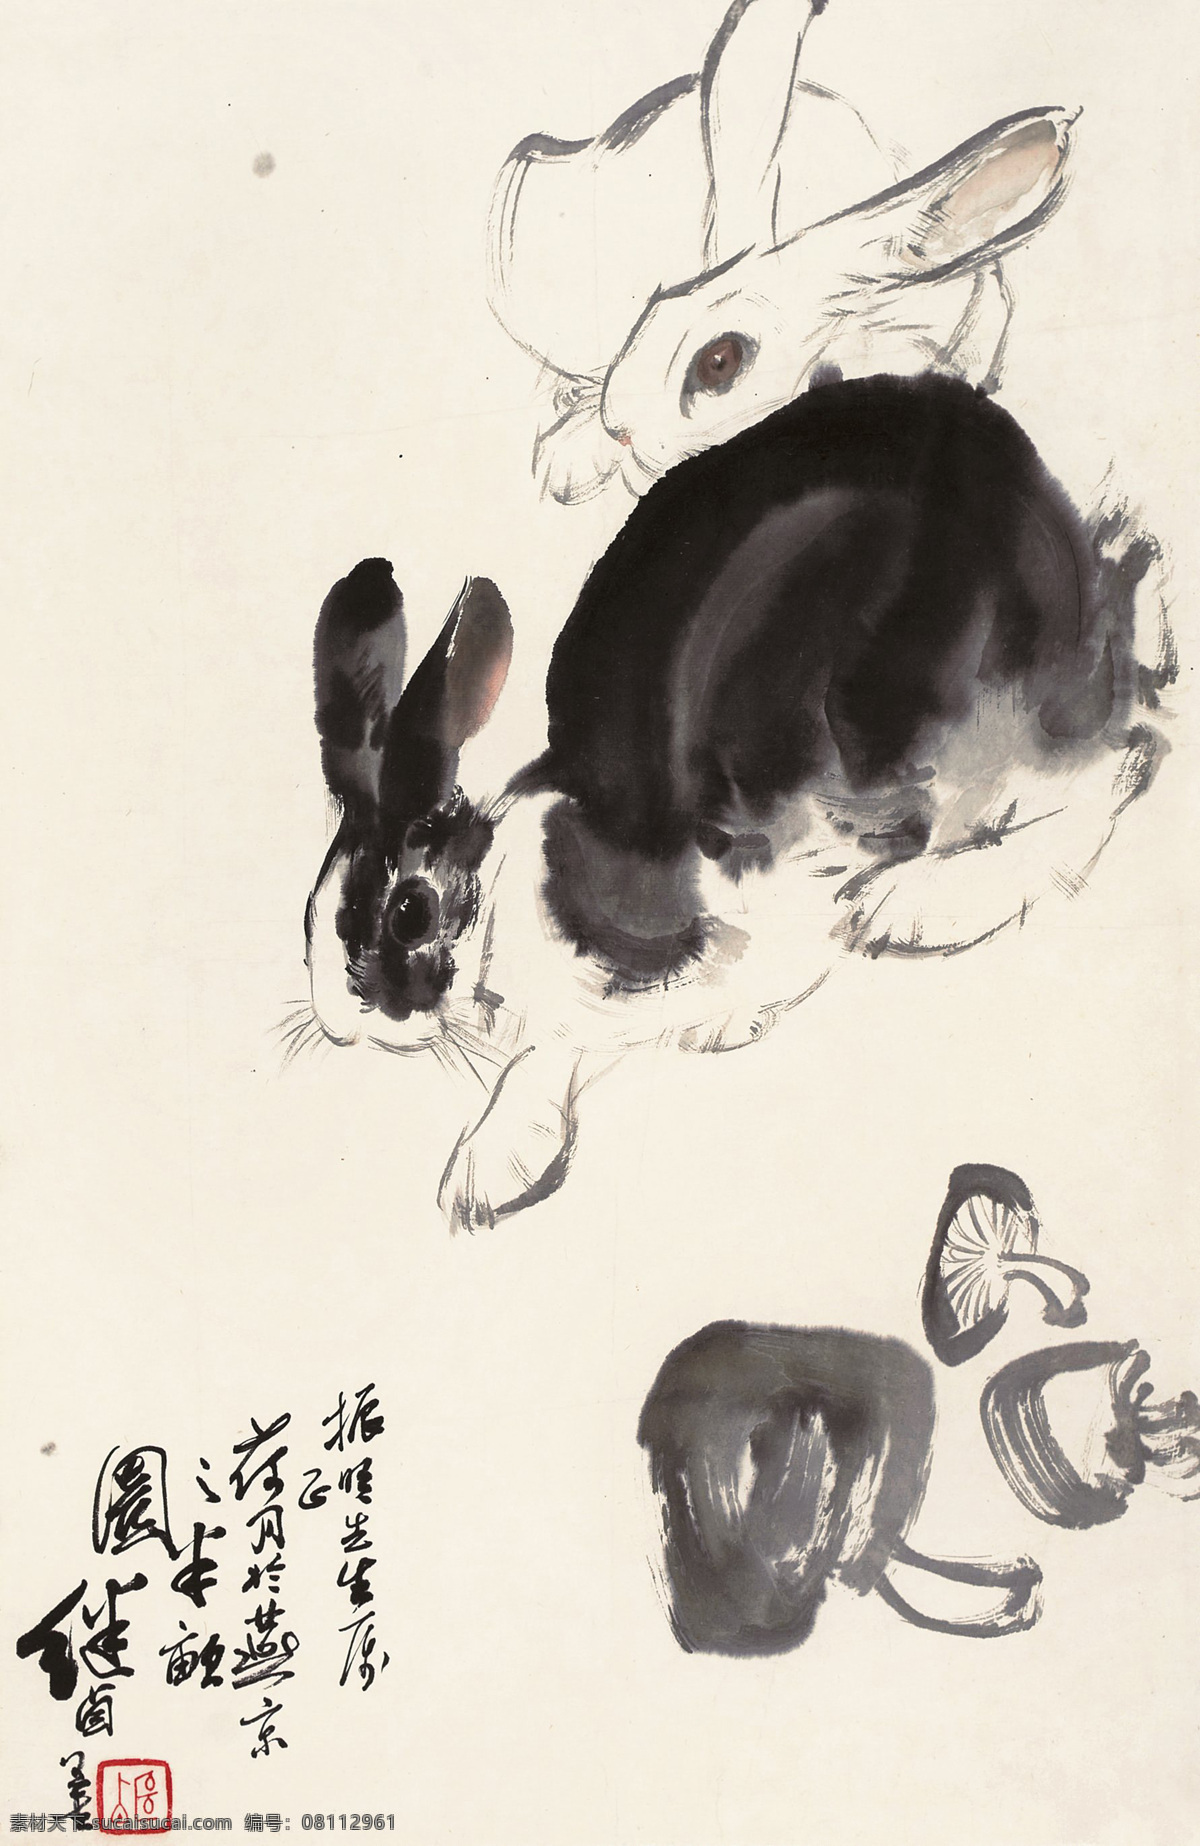 白兔 动物 国画 绘画书法 蘑菇 水墨画 兔子 双兔设计素材 双兔模板下载 双兔 刘继卣 灰兔 中国画 文化艺术